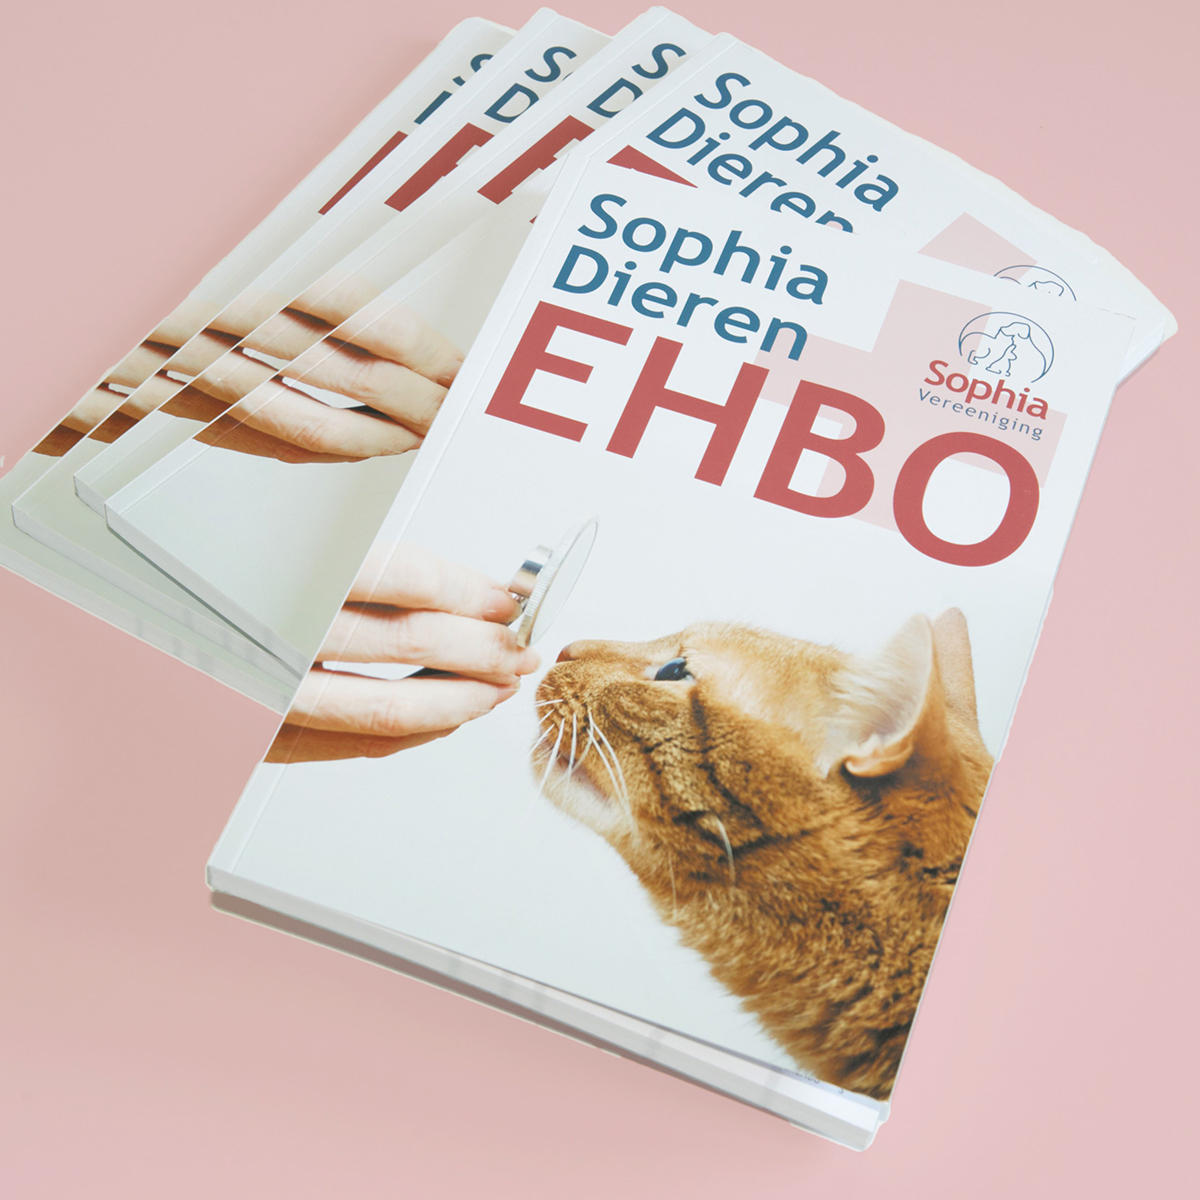 Struikelen lava Maar Handboek Sophia DierenEHBO | Sophia-Vereeniging